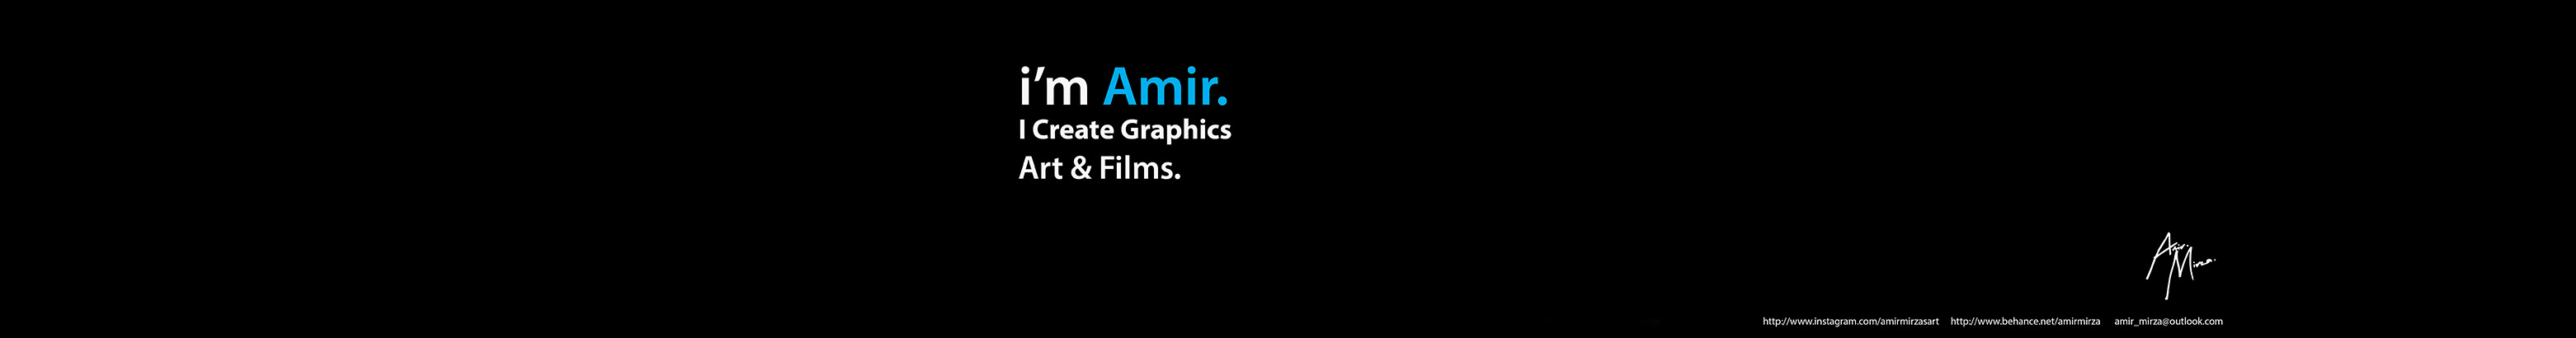 Amir Mirza profil başlığı